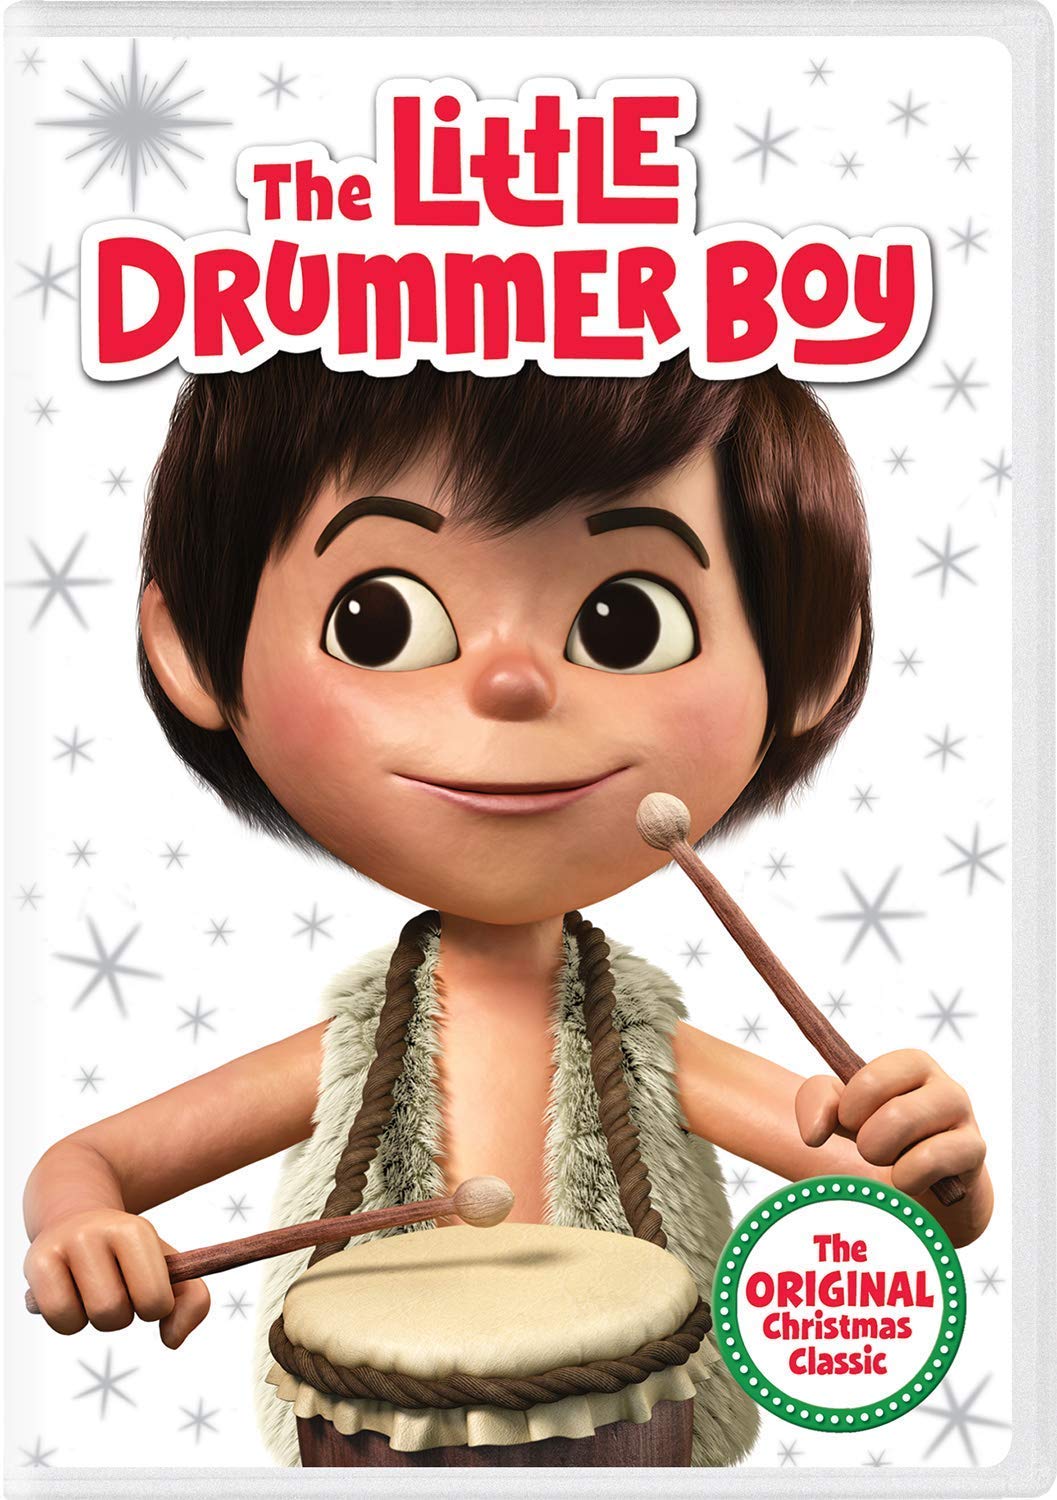 https://storage.googleapis.com/accesswire/media/673921/the-little-drummer-boy-poster.jpg